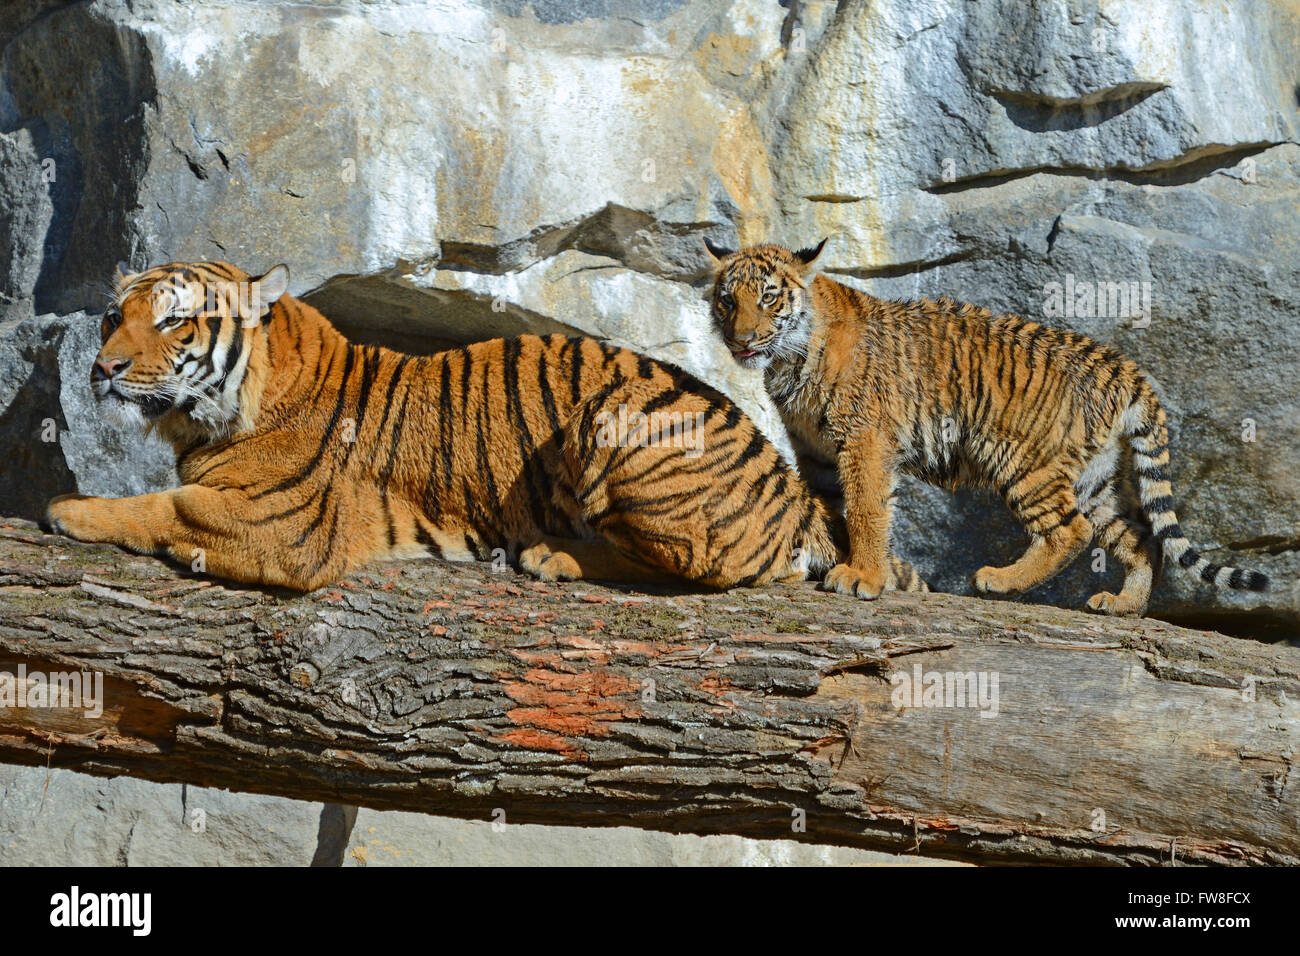 Hinterindischer Tiger (Panthera tigris corbetti) Weibchen mit Jungtier, Tierpark Berlin, Deutschland, Europa Stock Photo